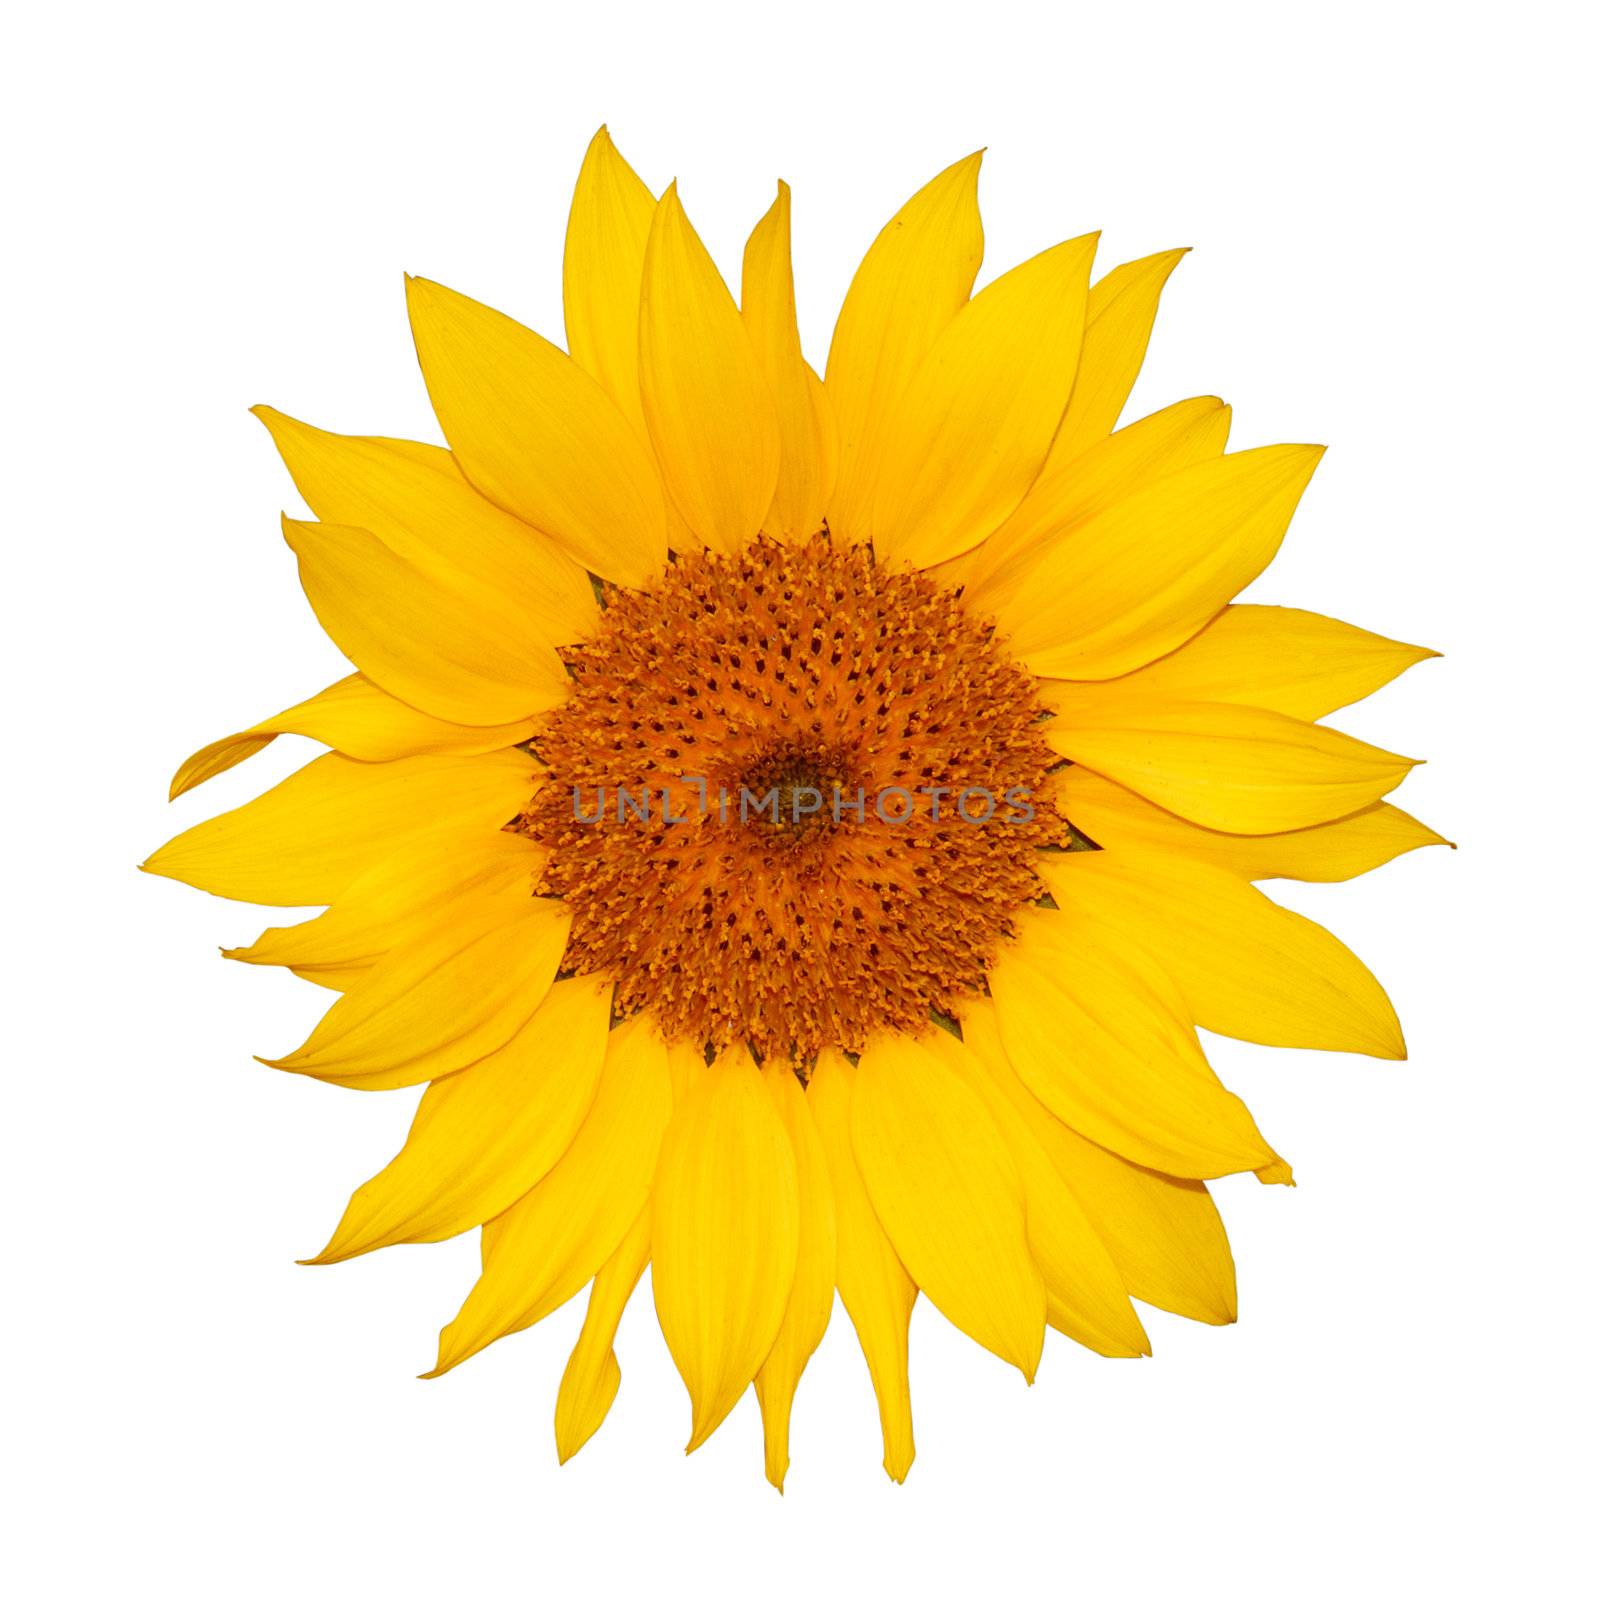 Colorful single sunflower by elwynn